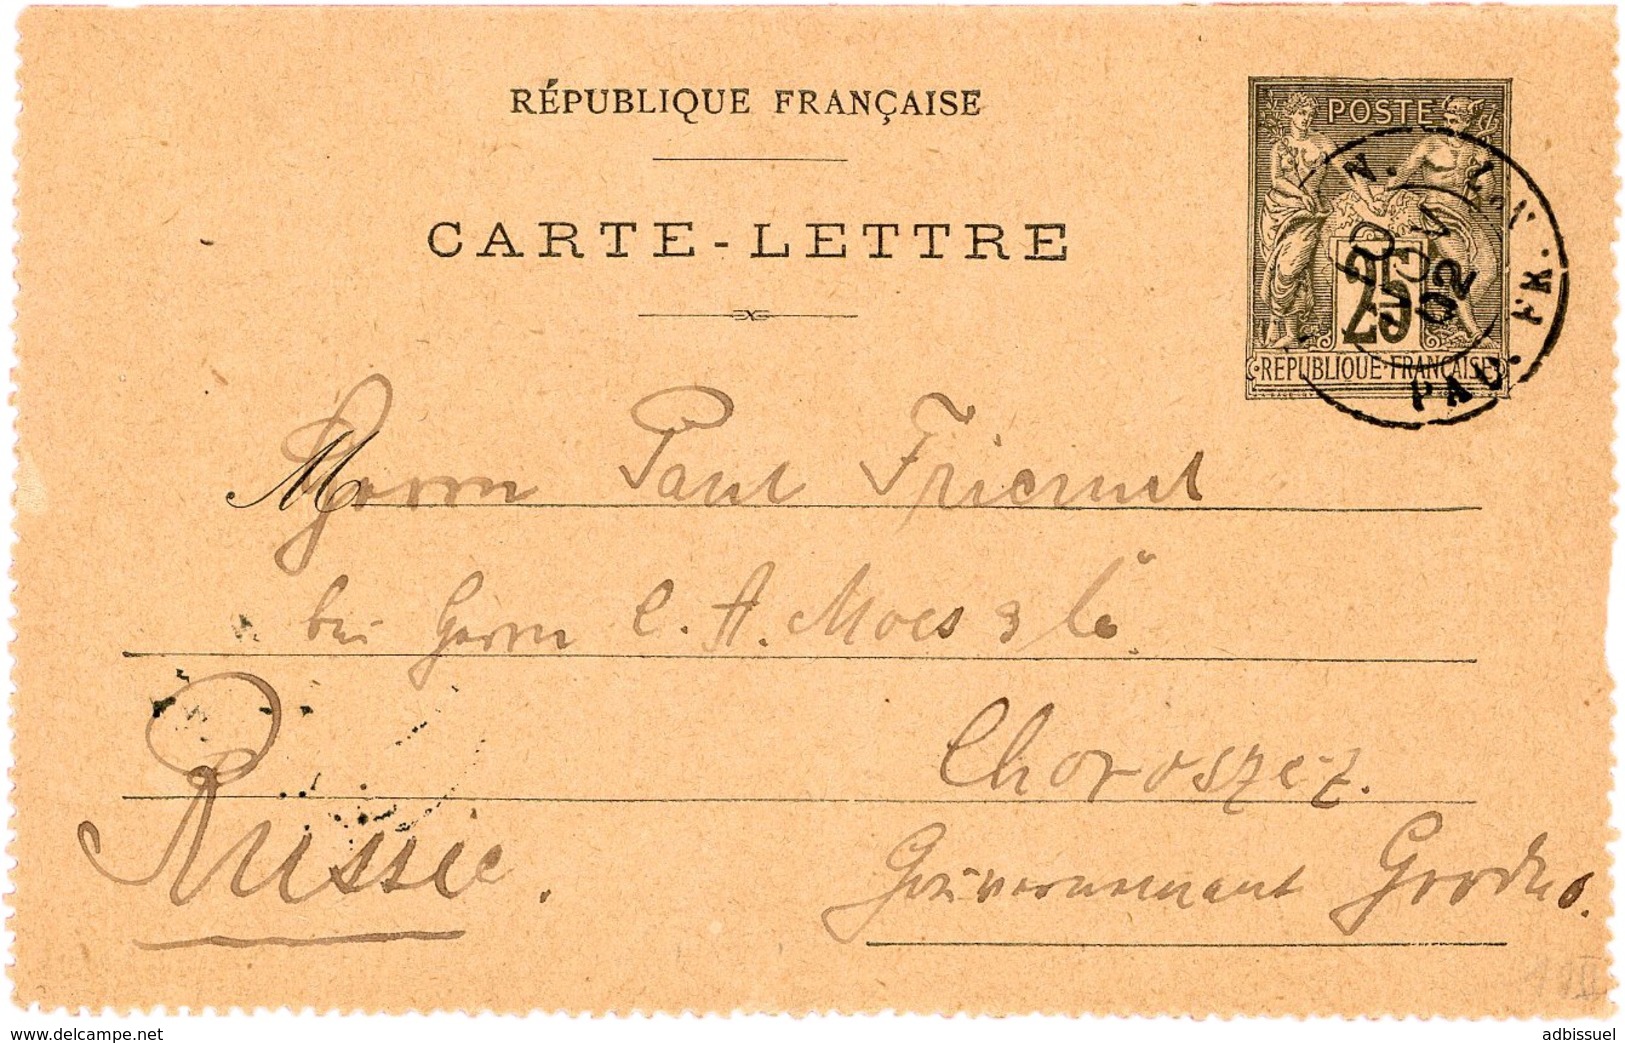 1902 Carte Lettre 25ct Adressée En RUSSIE Obl. C.à.d "LIGNE N. PAQ. FR. N°7 10/11/02" (Escale De Shanghai, Indice 13) - Cartes-lettres